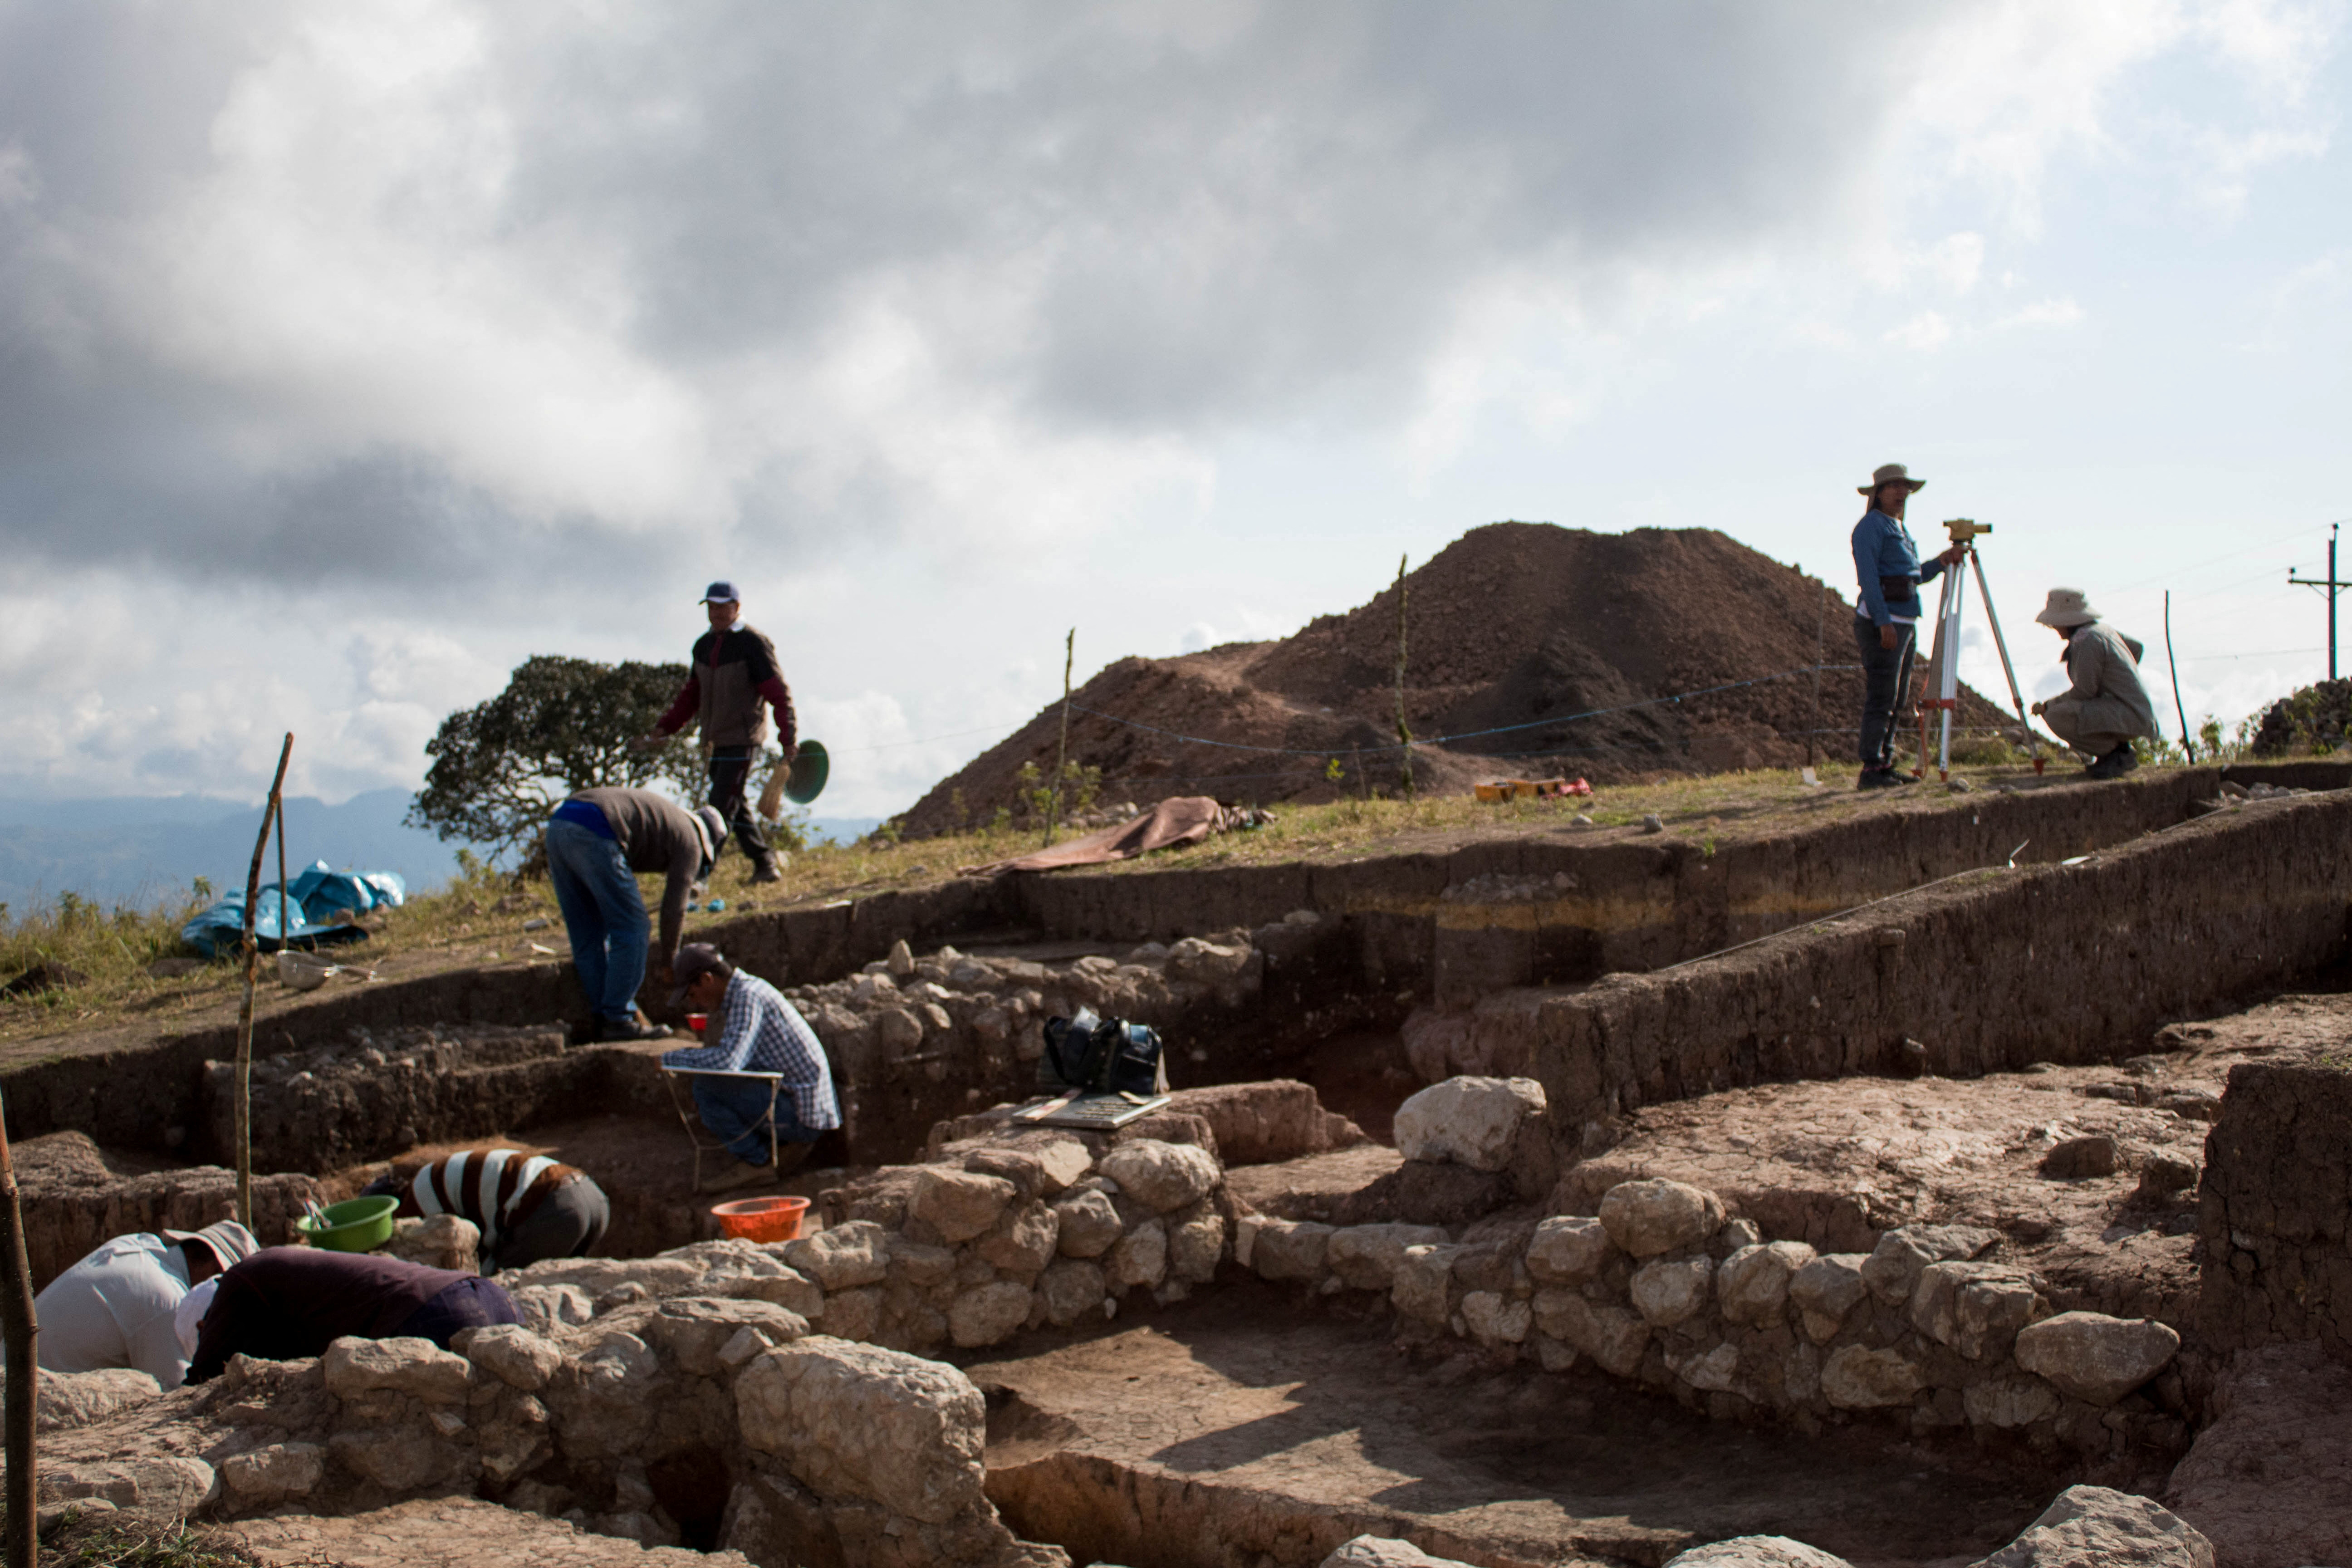 Des archéologues s'affairent à étudier le site précolombien de Pacopampa, au nord-ouest du Pérou. © Ministère de la Culture du Pérou